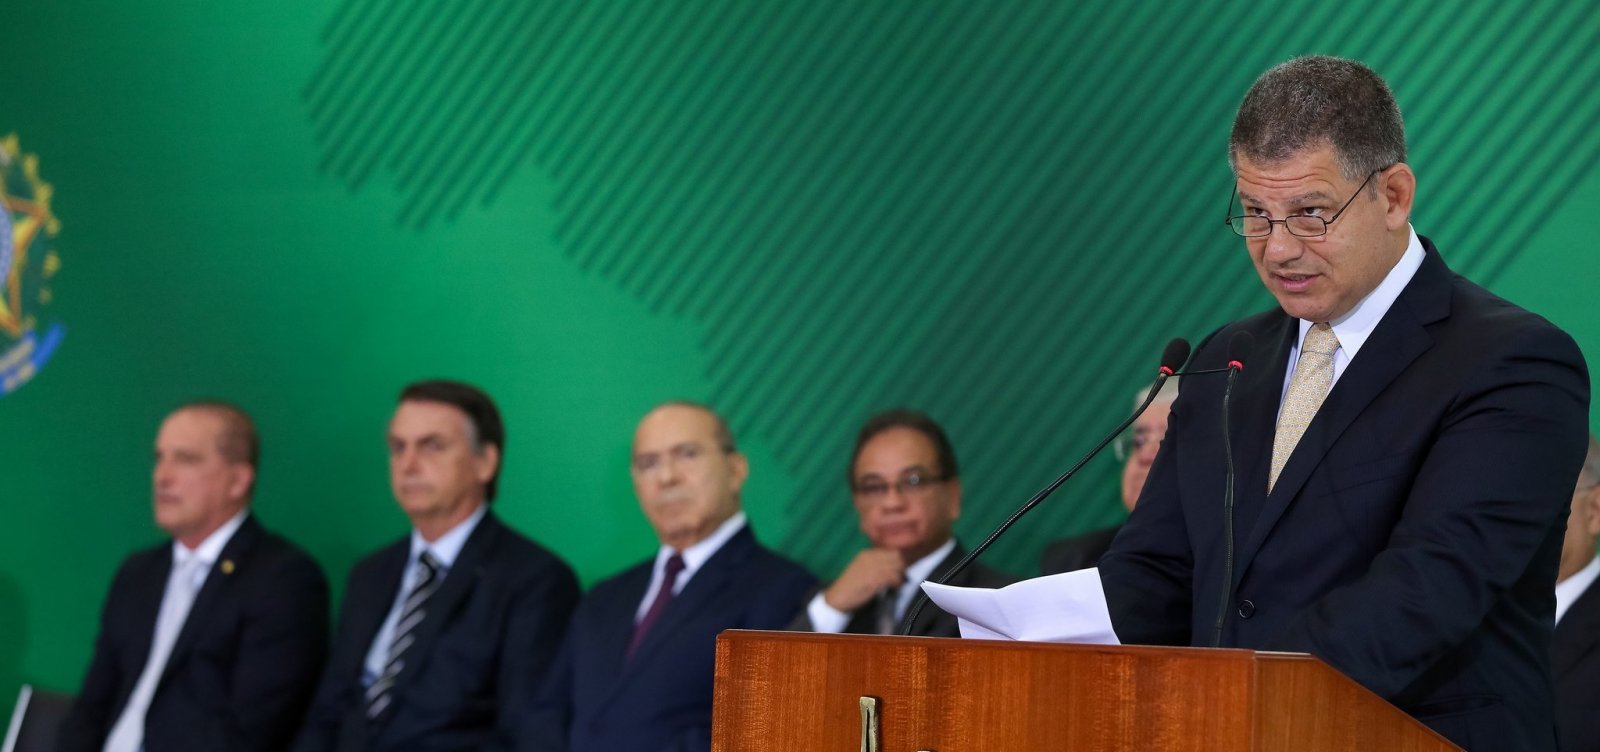 Bolsonaro já assinou exoneração de Bebianno, diz jornal